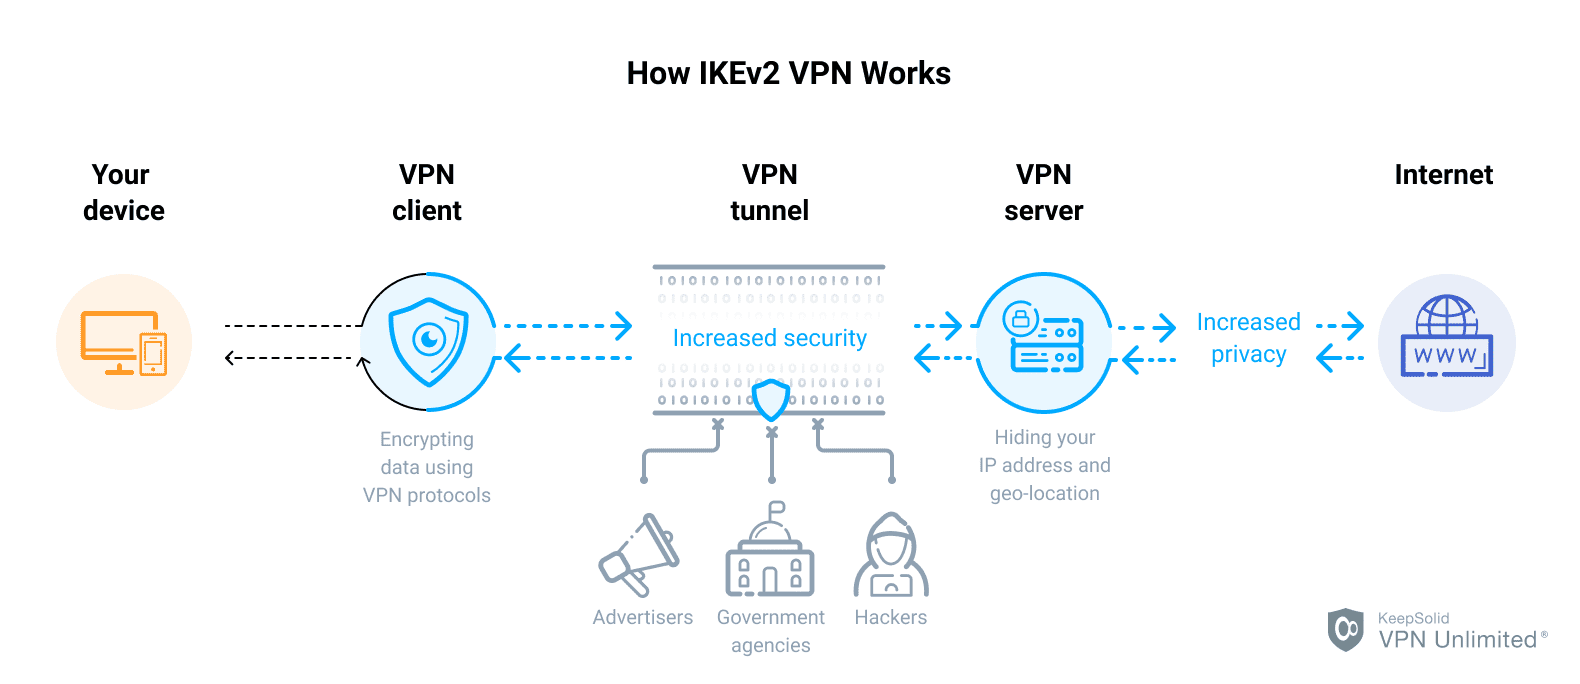 Hva betyr IKEV2 i VPN?